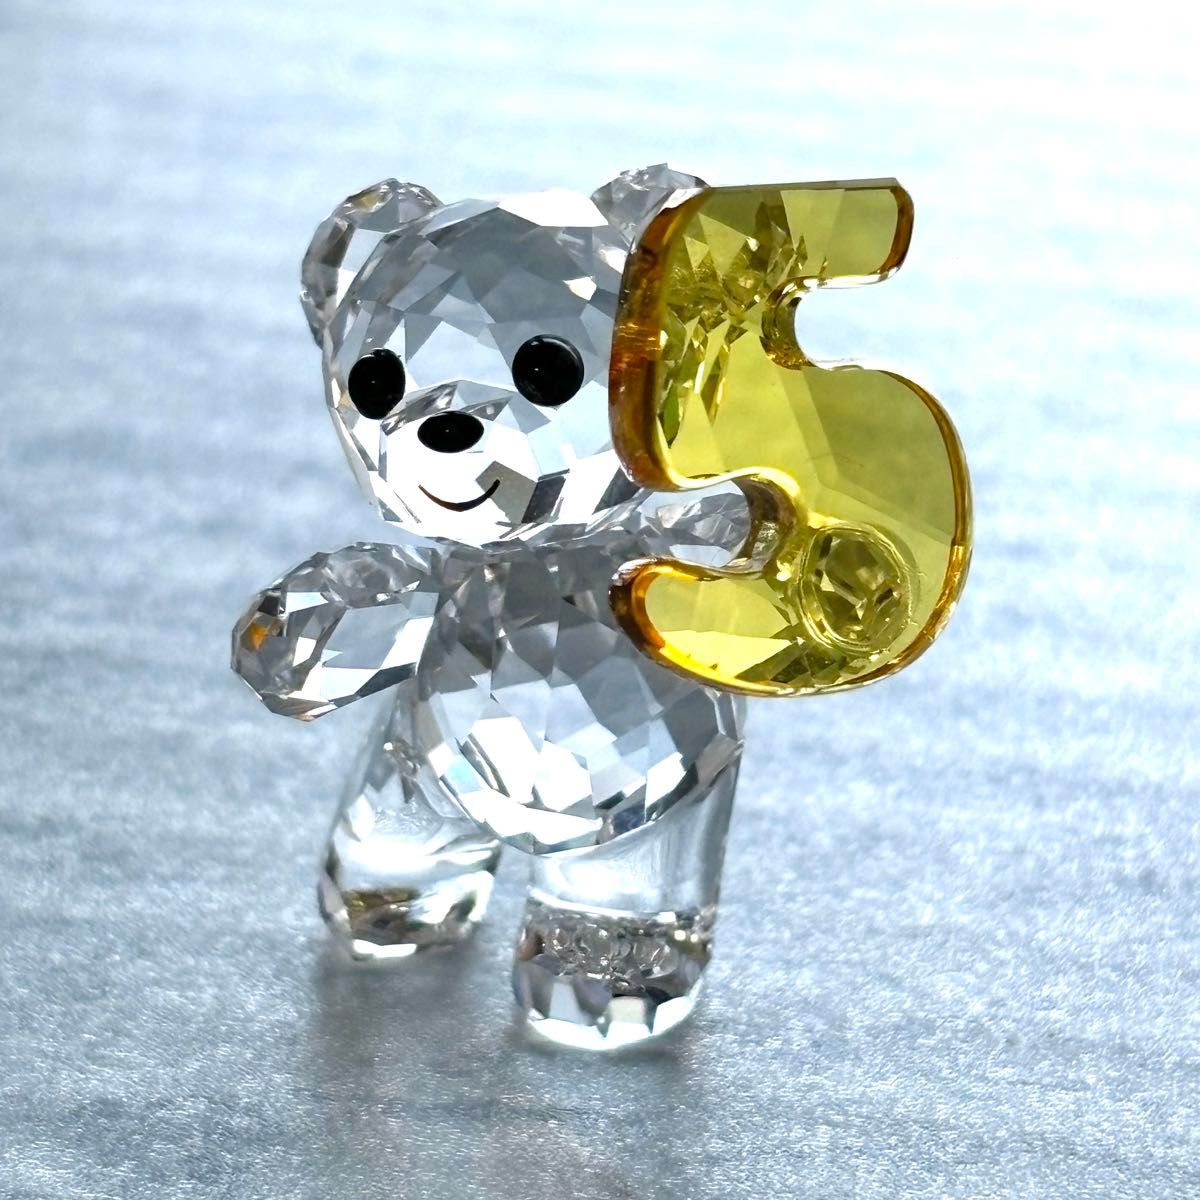 スワロフスキー クリスベア NO.5 数字 置物 クリスタル クマ 熊 ナンバー ファイブ クリスタル SWAROVSKI